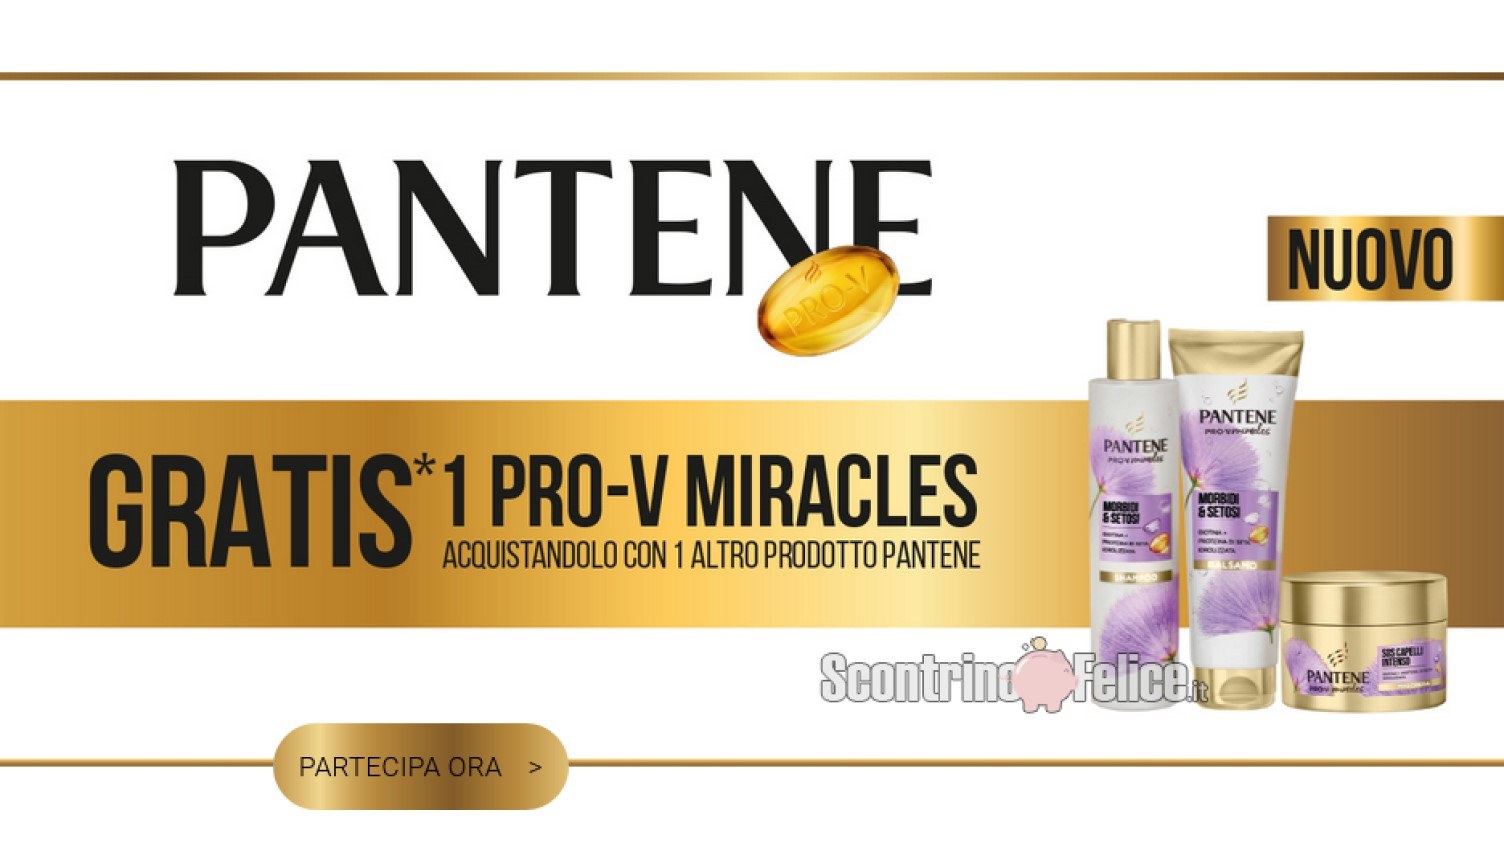 "Gratis 1 Pantene Pro-V Miracles acquistando un altro prodotto Pantene": ecco come ricevere il rimborso!